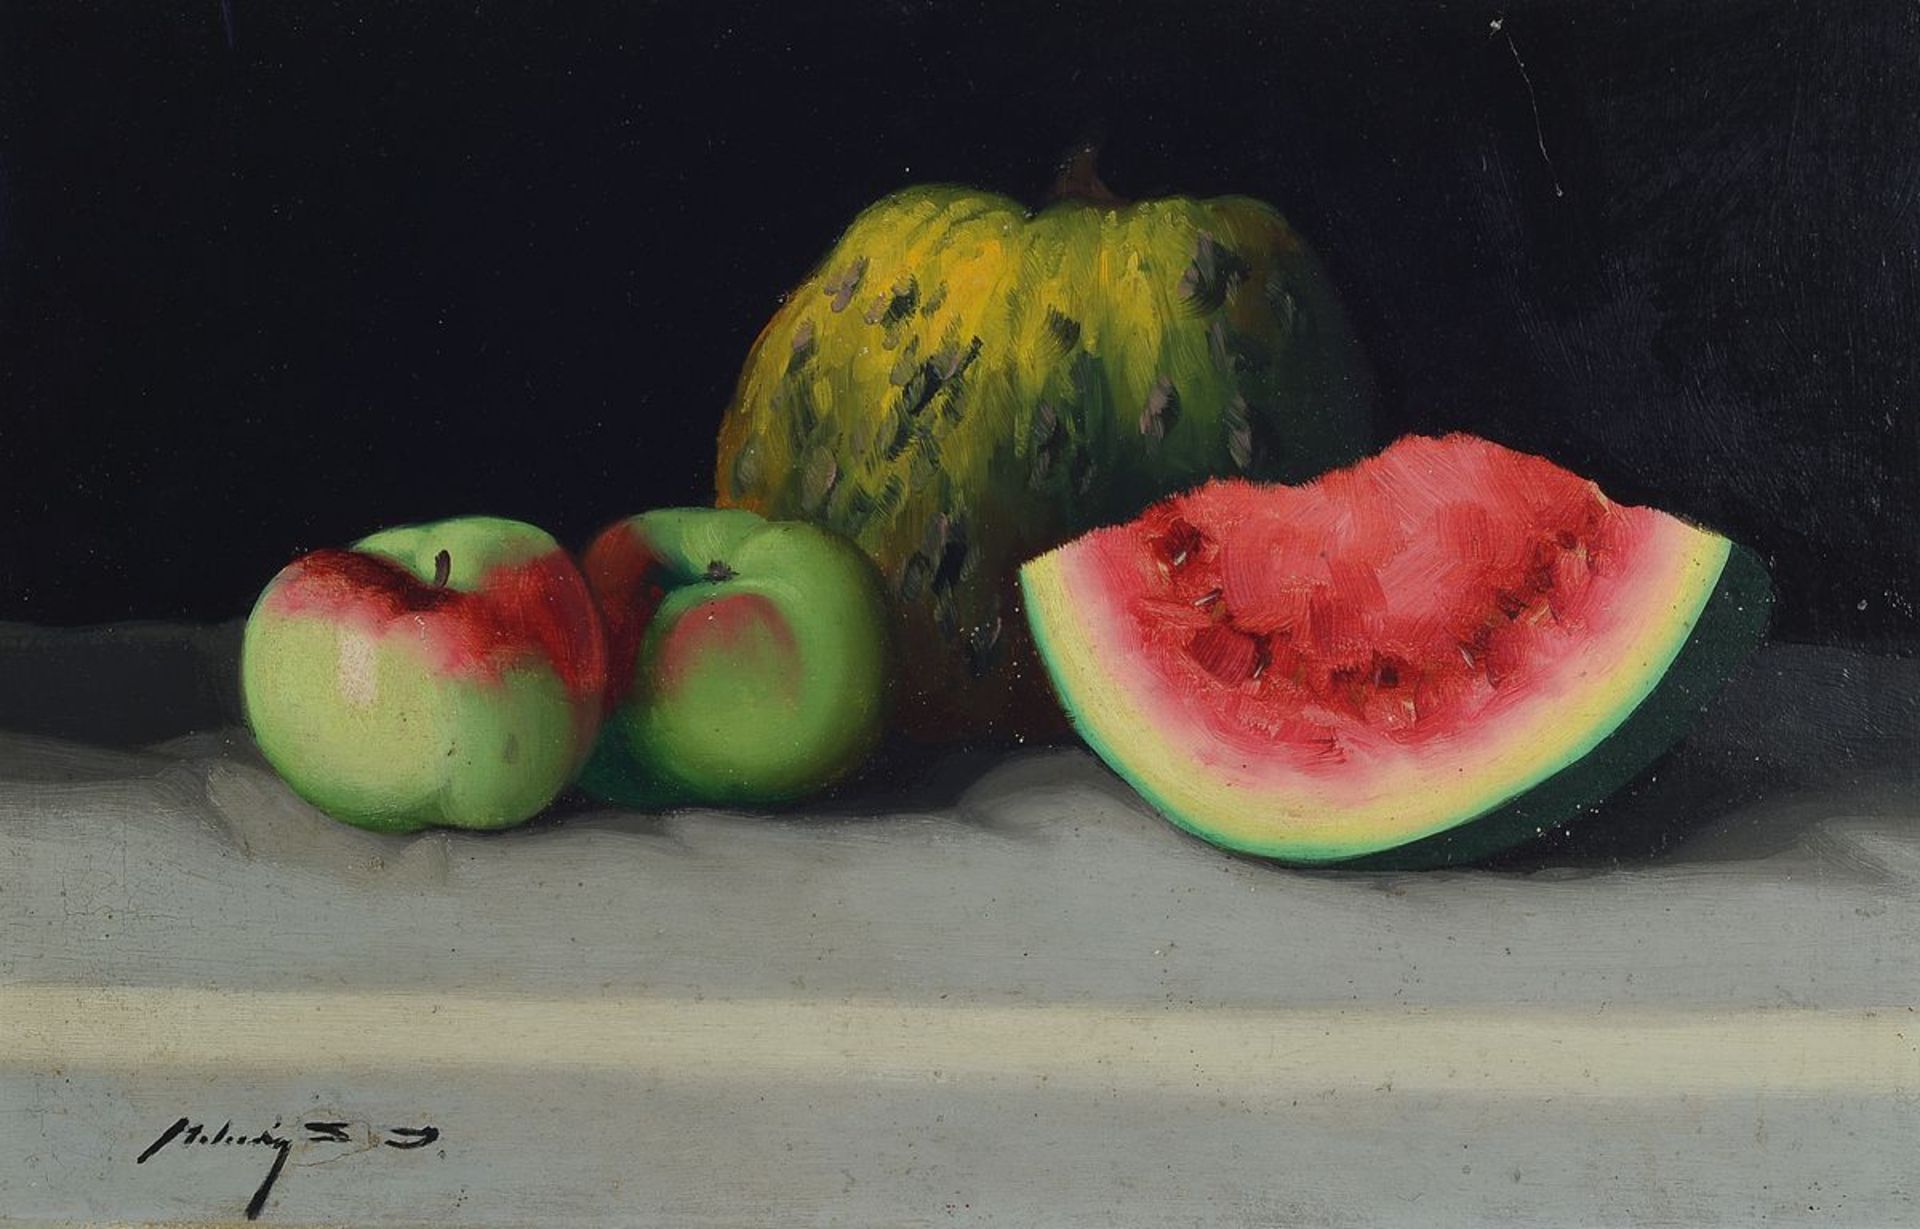 Janos Zoltan Molnar, 1860-1960, ungarischer Stilllebenmaler, Stillleben mit Melone und Äpfeln, Öl/